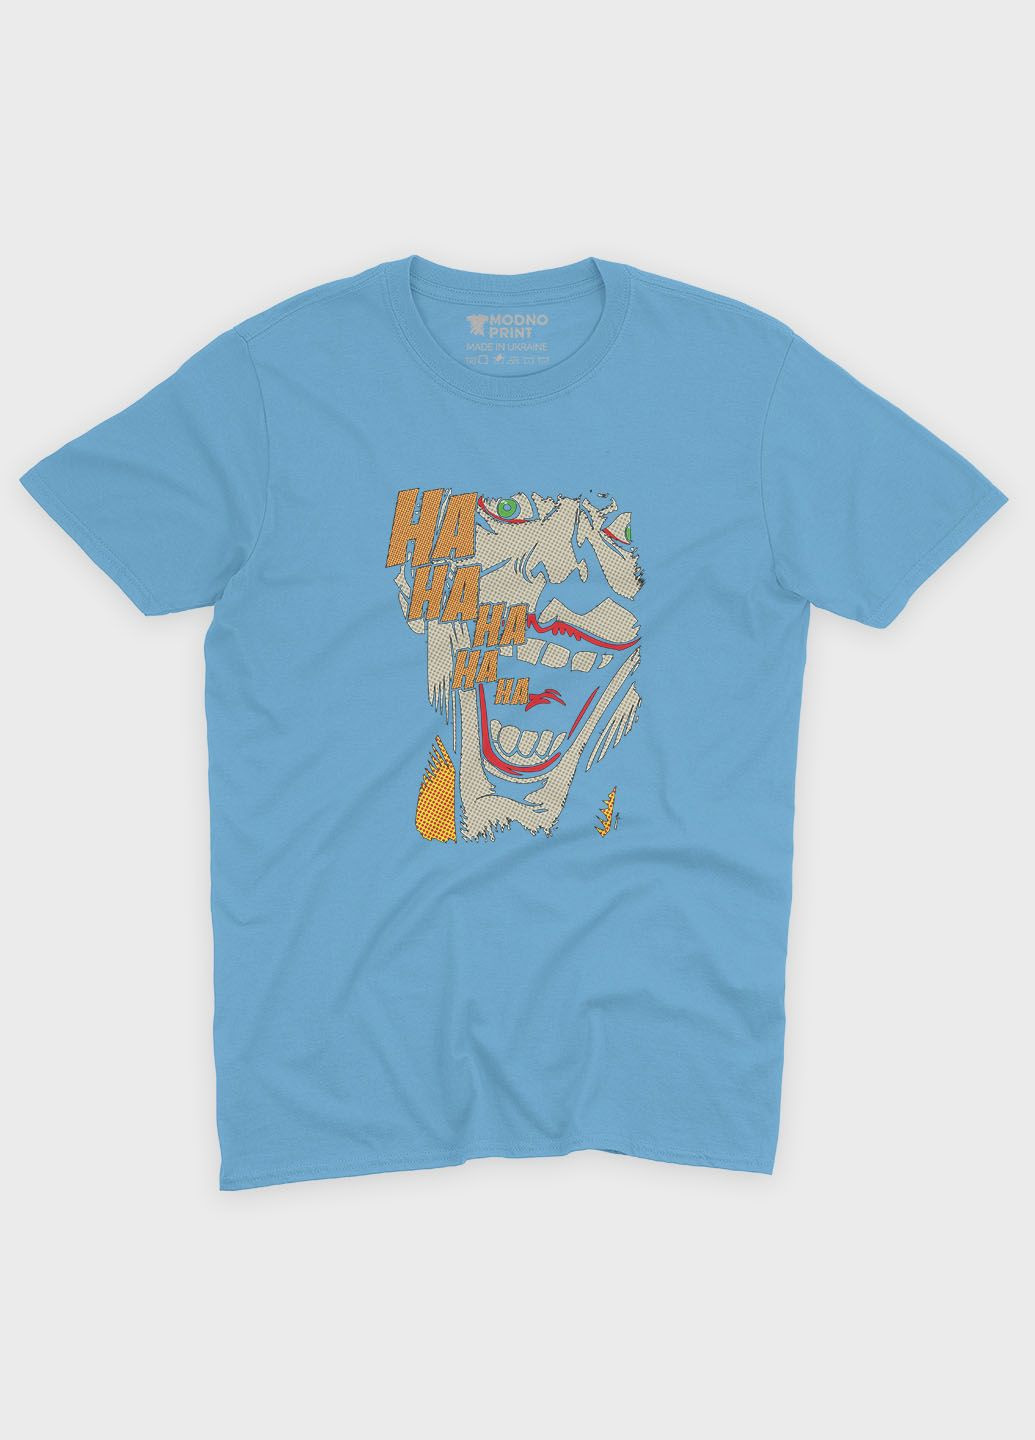 Голубая демисезонная футболка для мальчика с принтом супервора - джокер (ts001-1-lbl-006-005-007-b) Modno